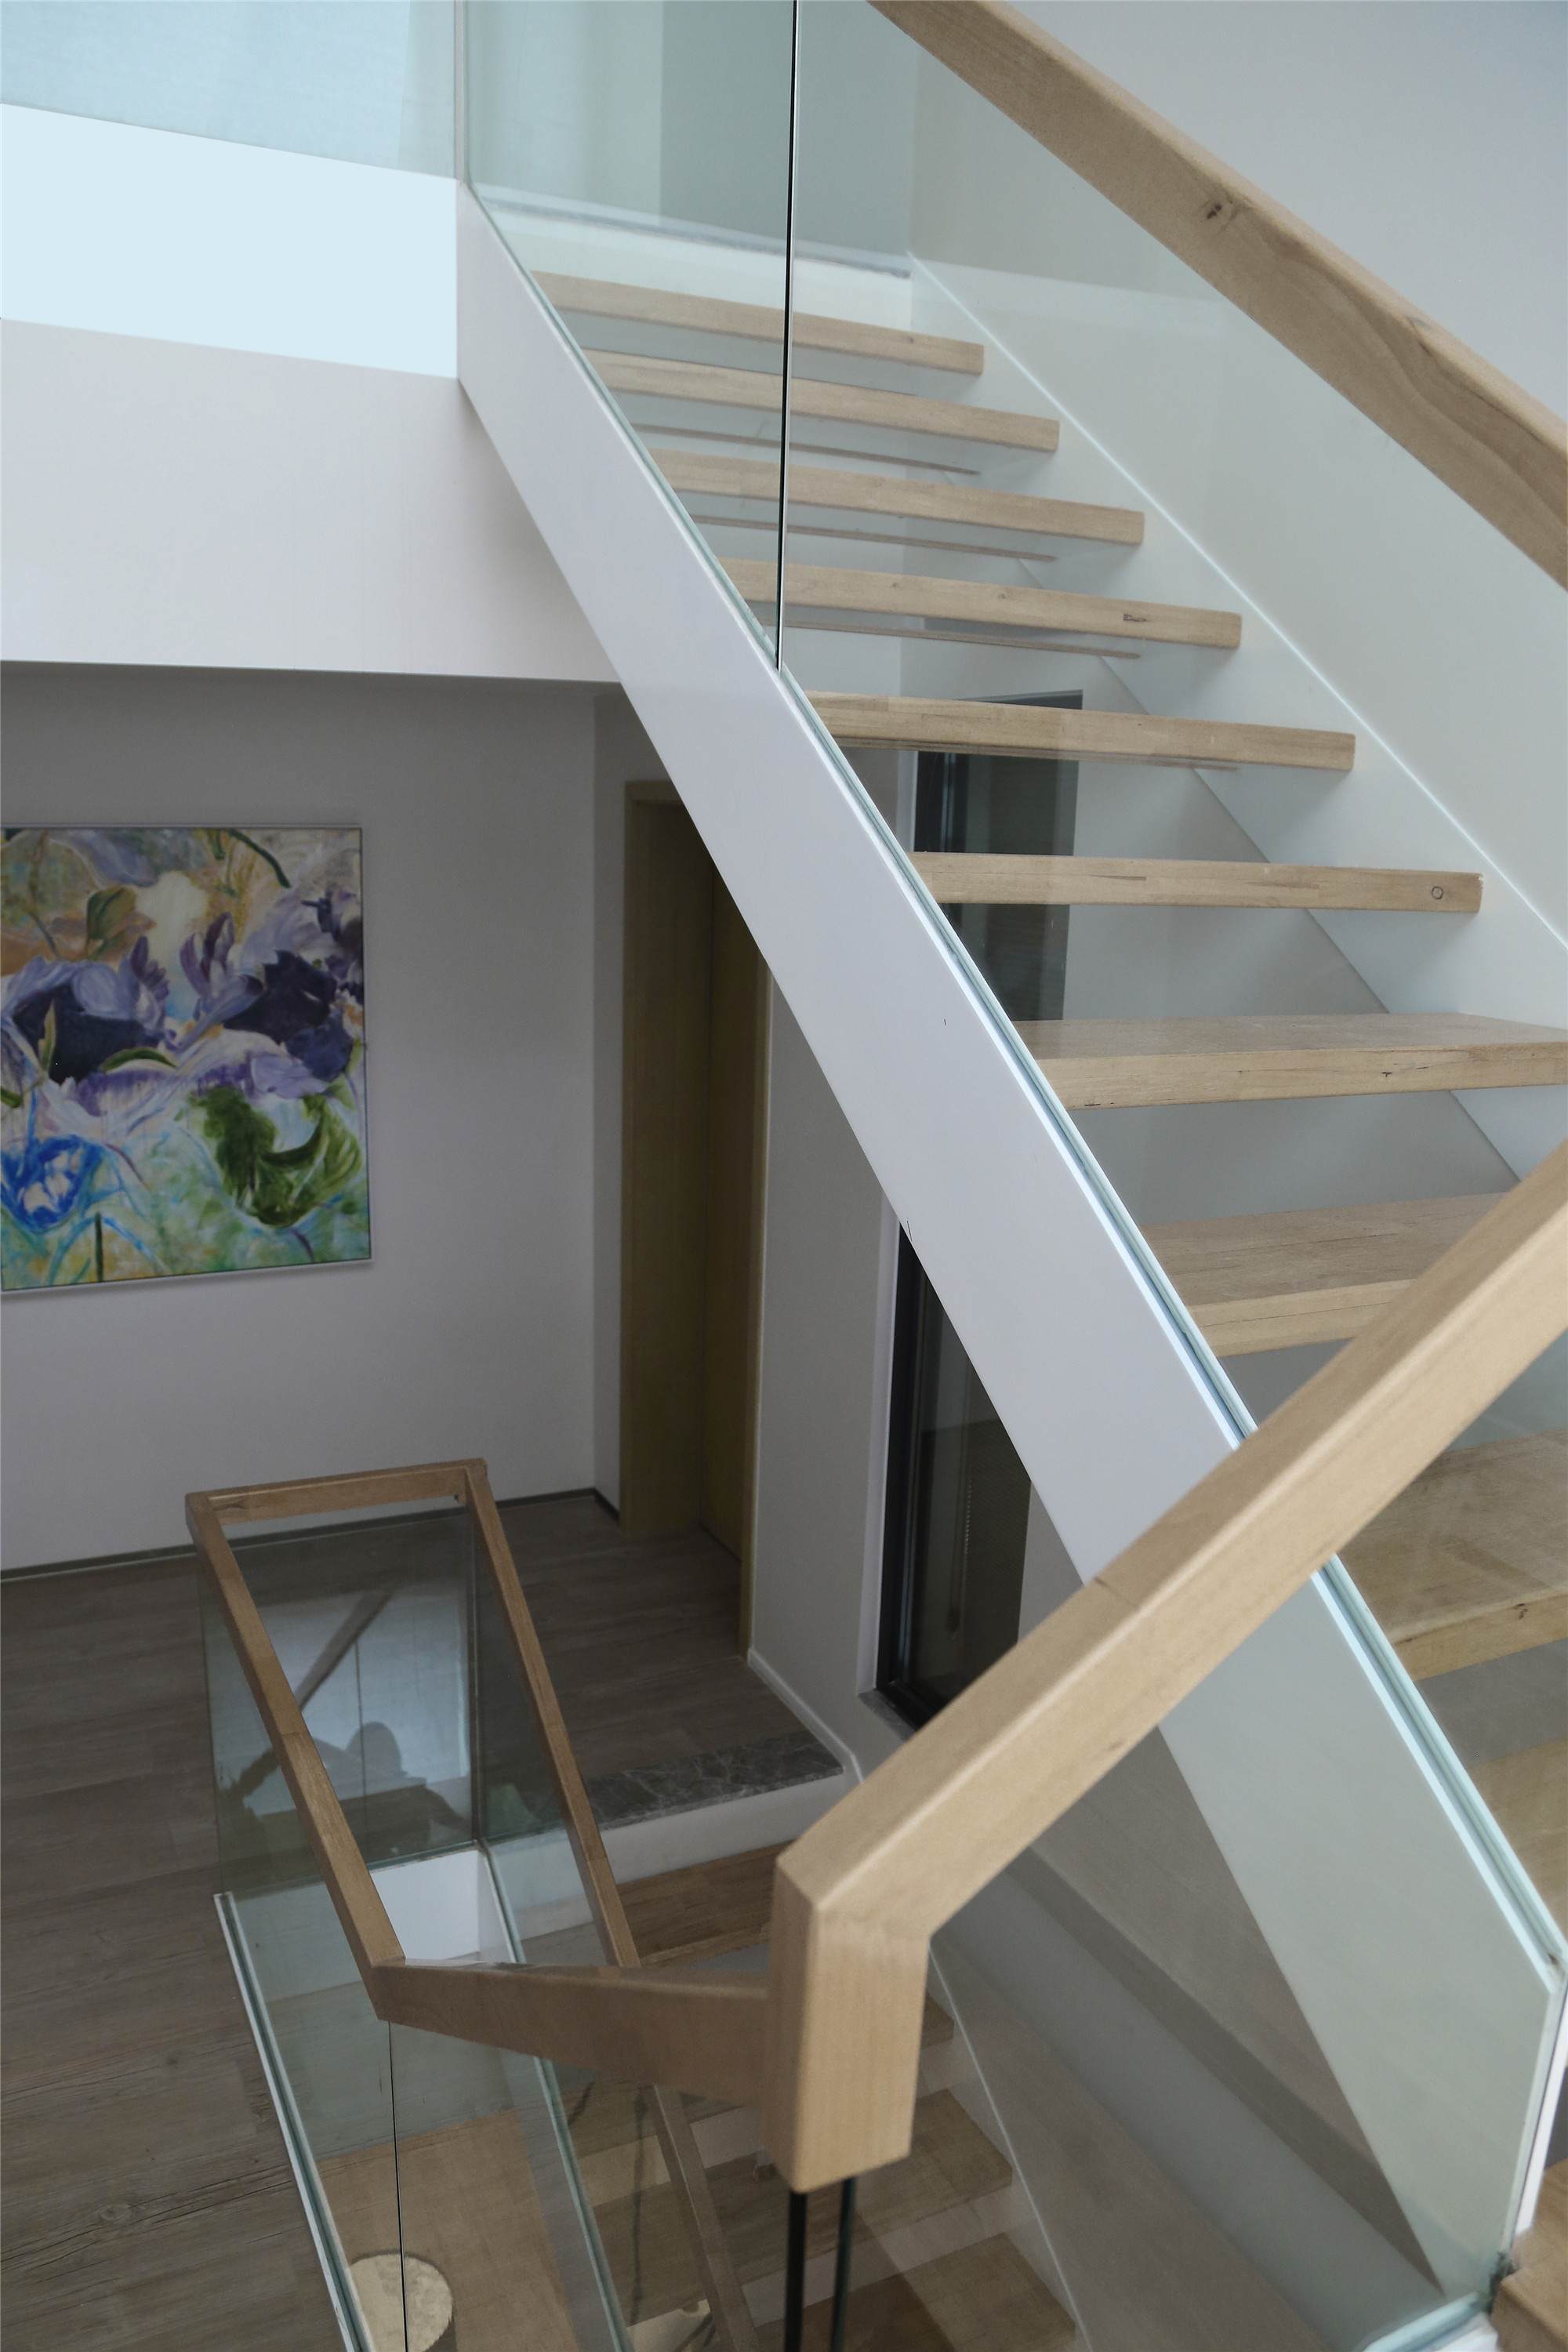 
楼梯玻璃护栏搭配简易的木质镂空台阶，突显了房屋整体的现代风格，十分协调融洽。楼梯结构不仅节省了使用空间，在视觉上也显得轻巧便利，视野无阻，且丰富了空间层次感。
